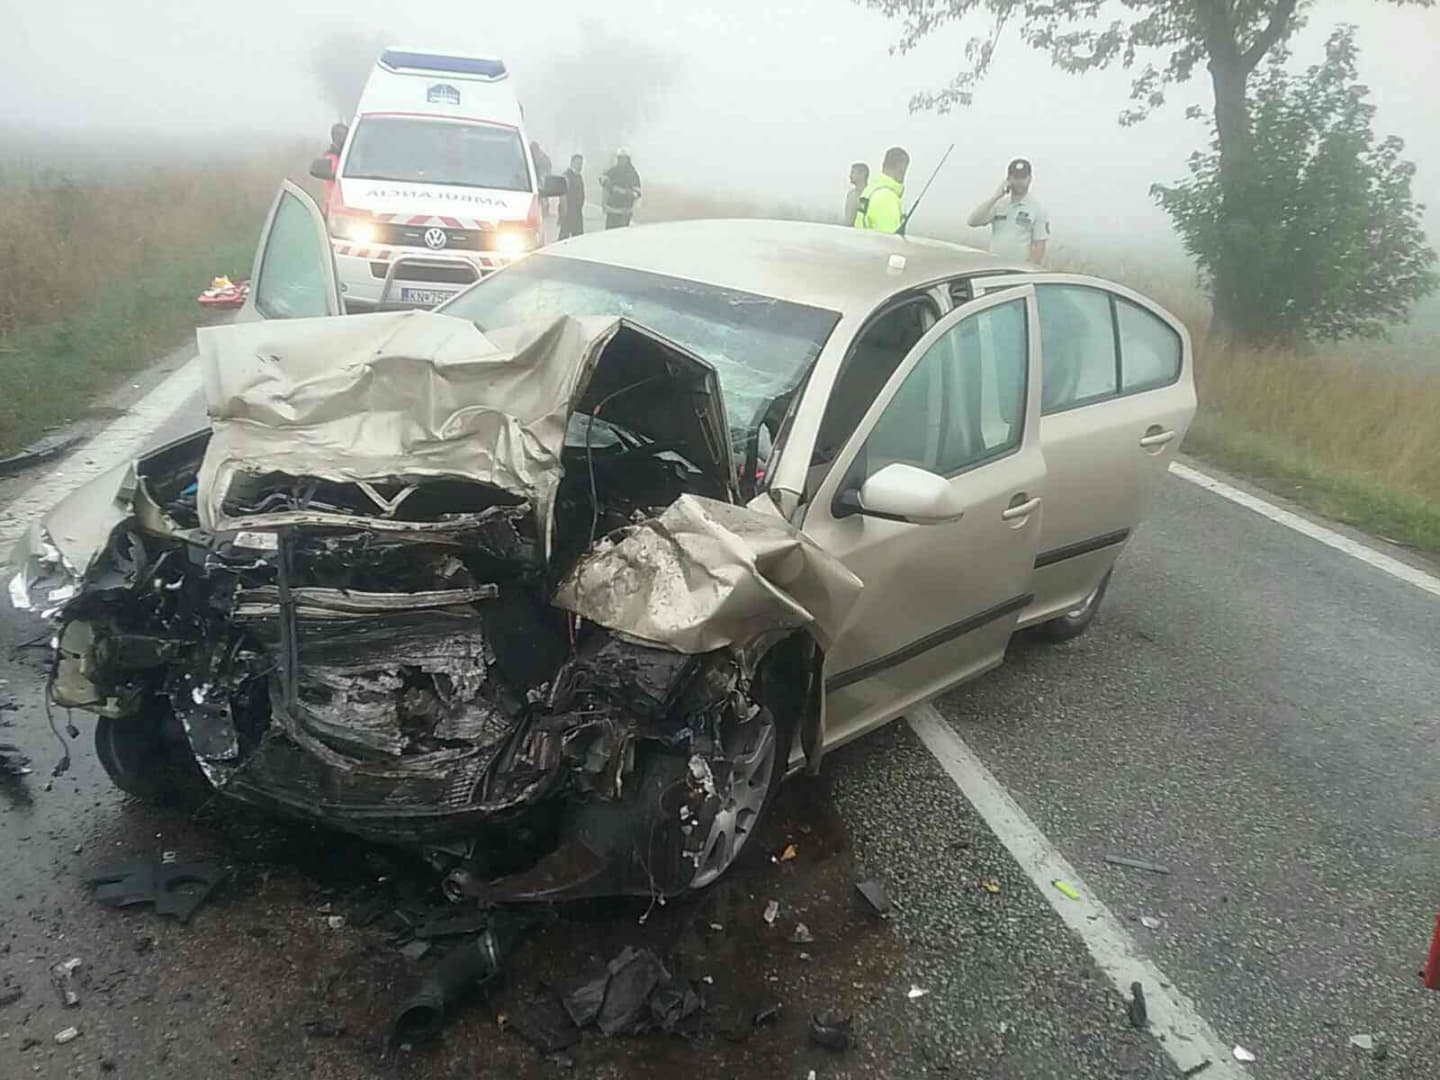 Súlyos baleset: frontálisan ütközött két személyautó a reggeli ködben, 21 éves sofőr vesztette életét (FOTÓK)